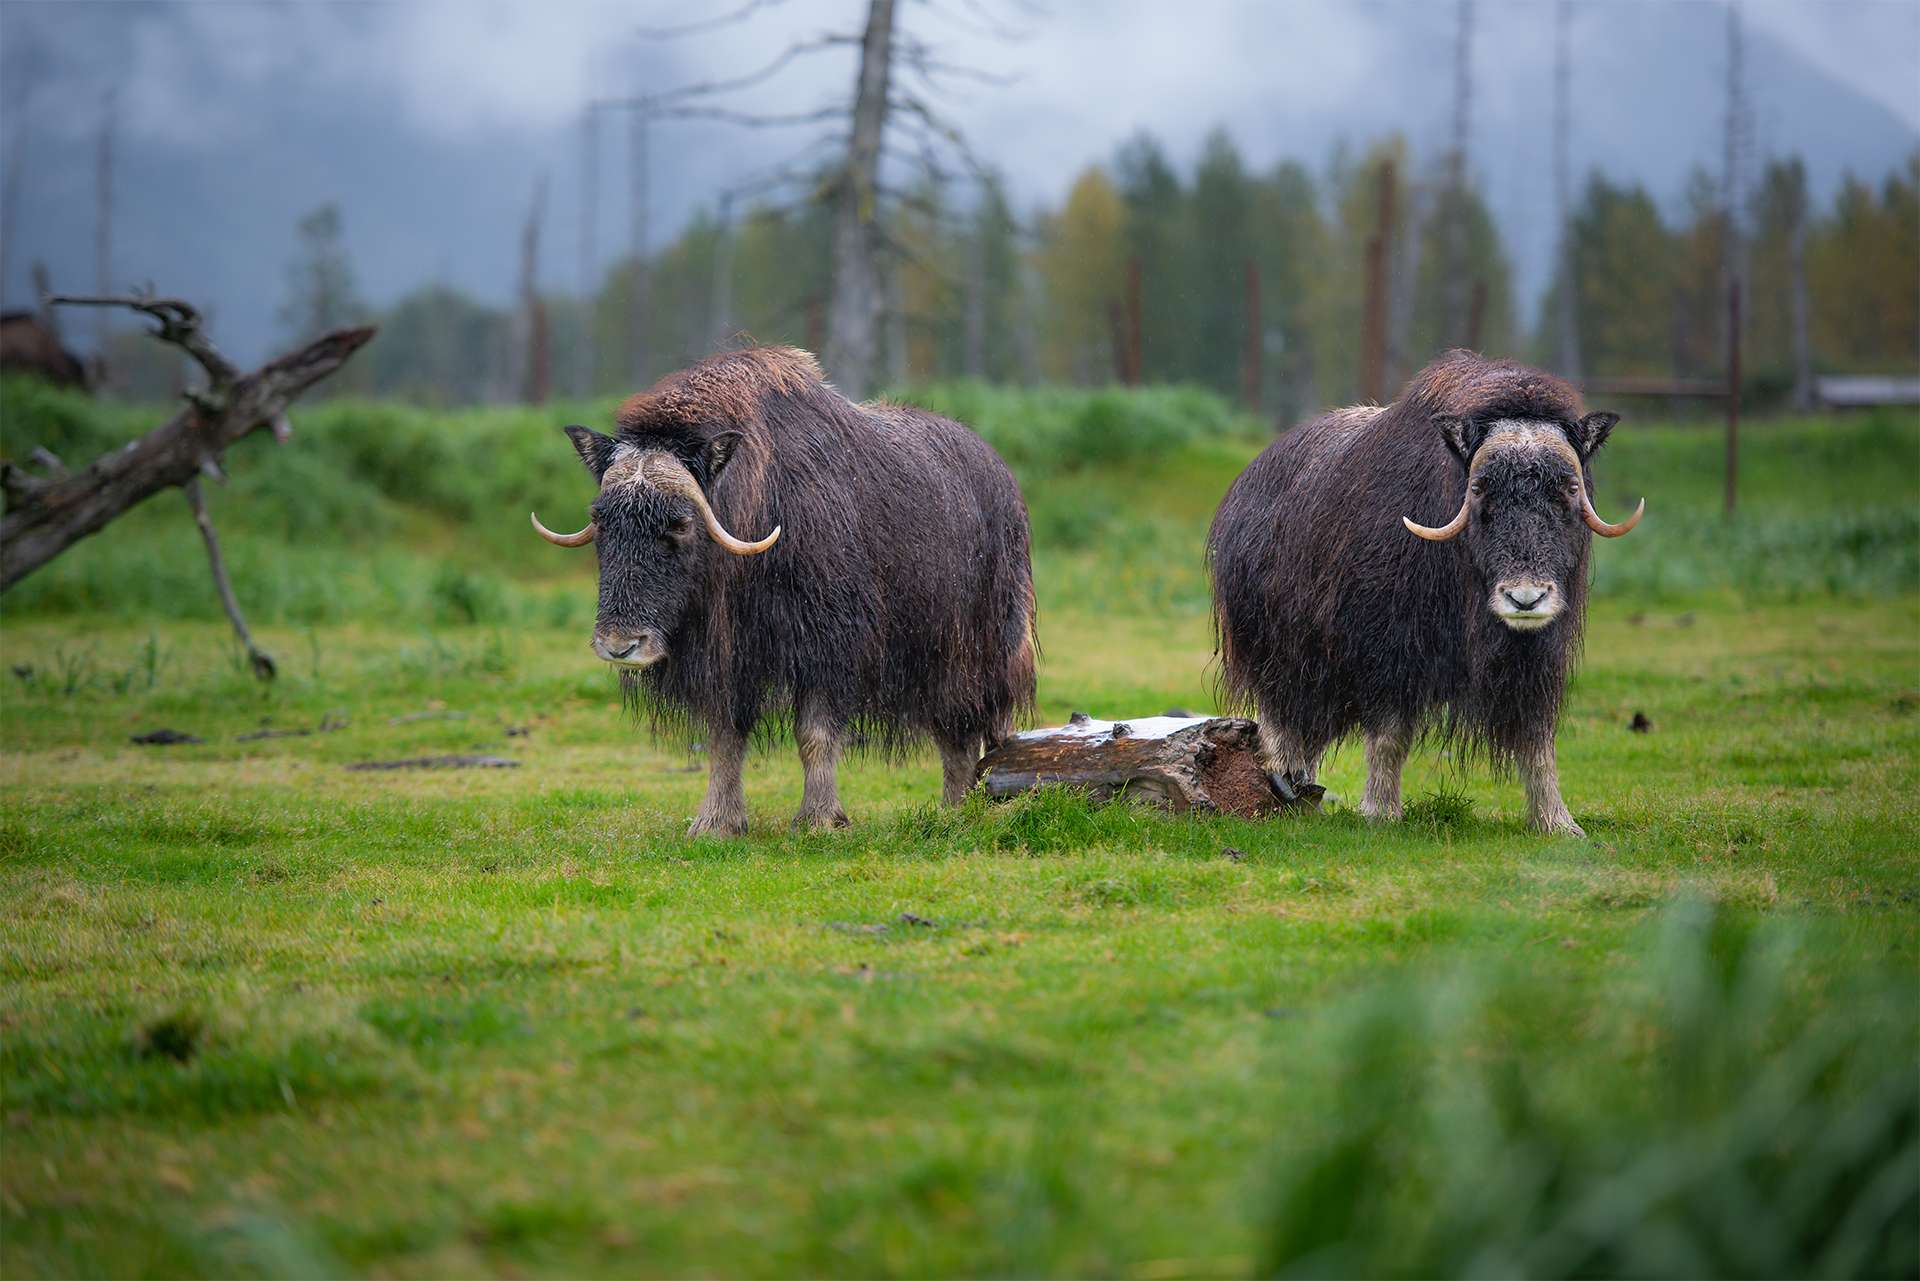 Two Muskoxen standing in a green field in Alaska, USA.